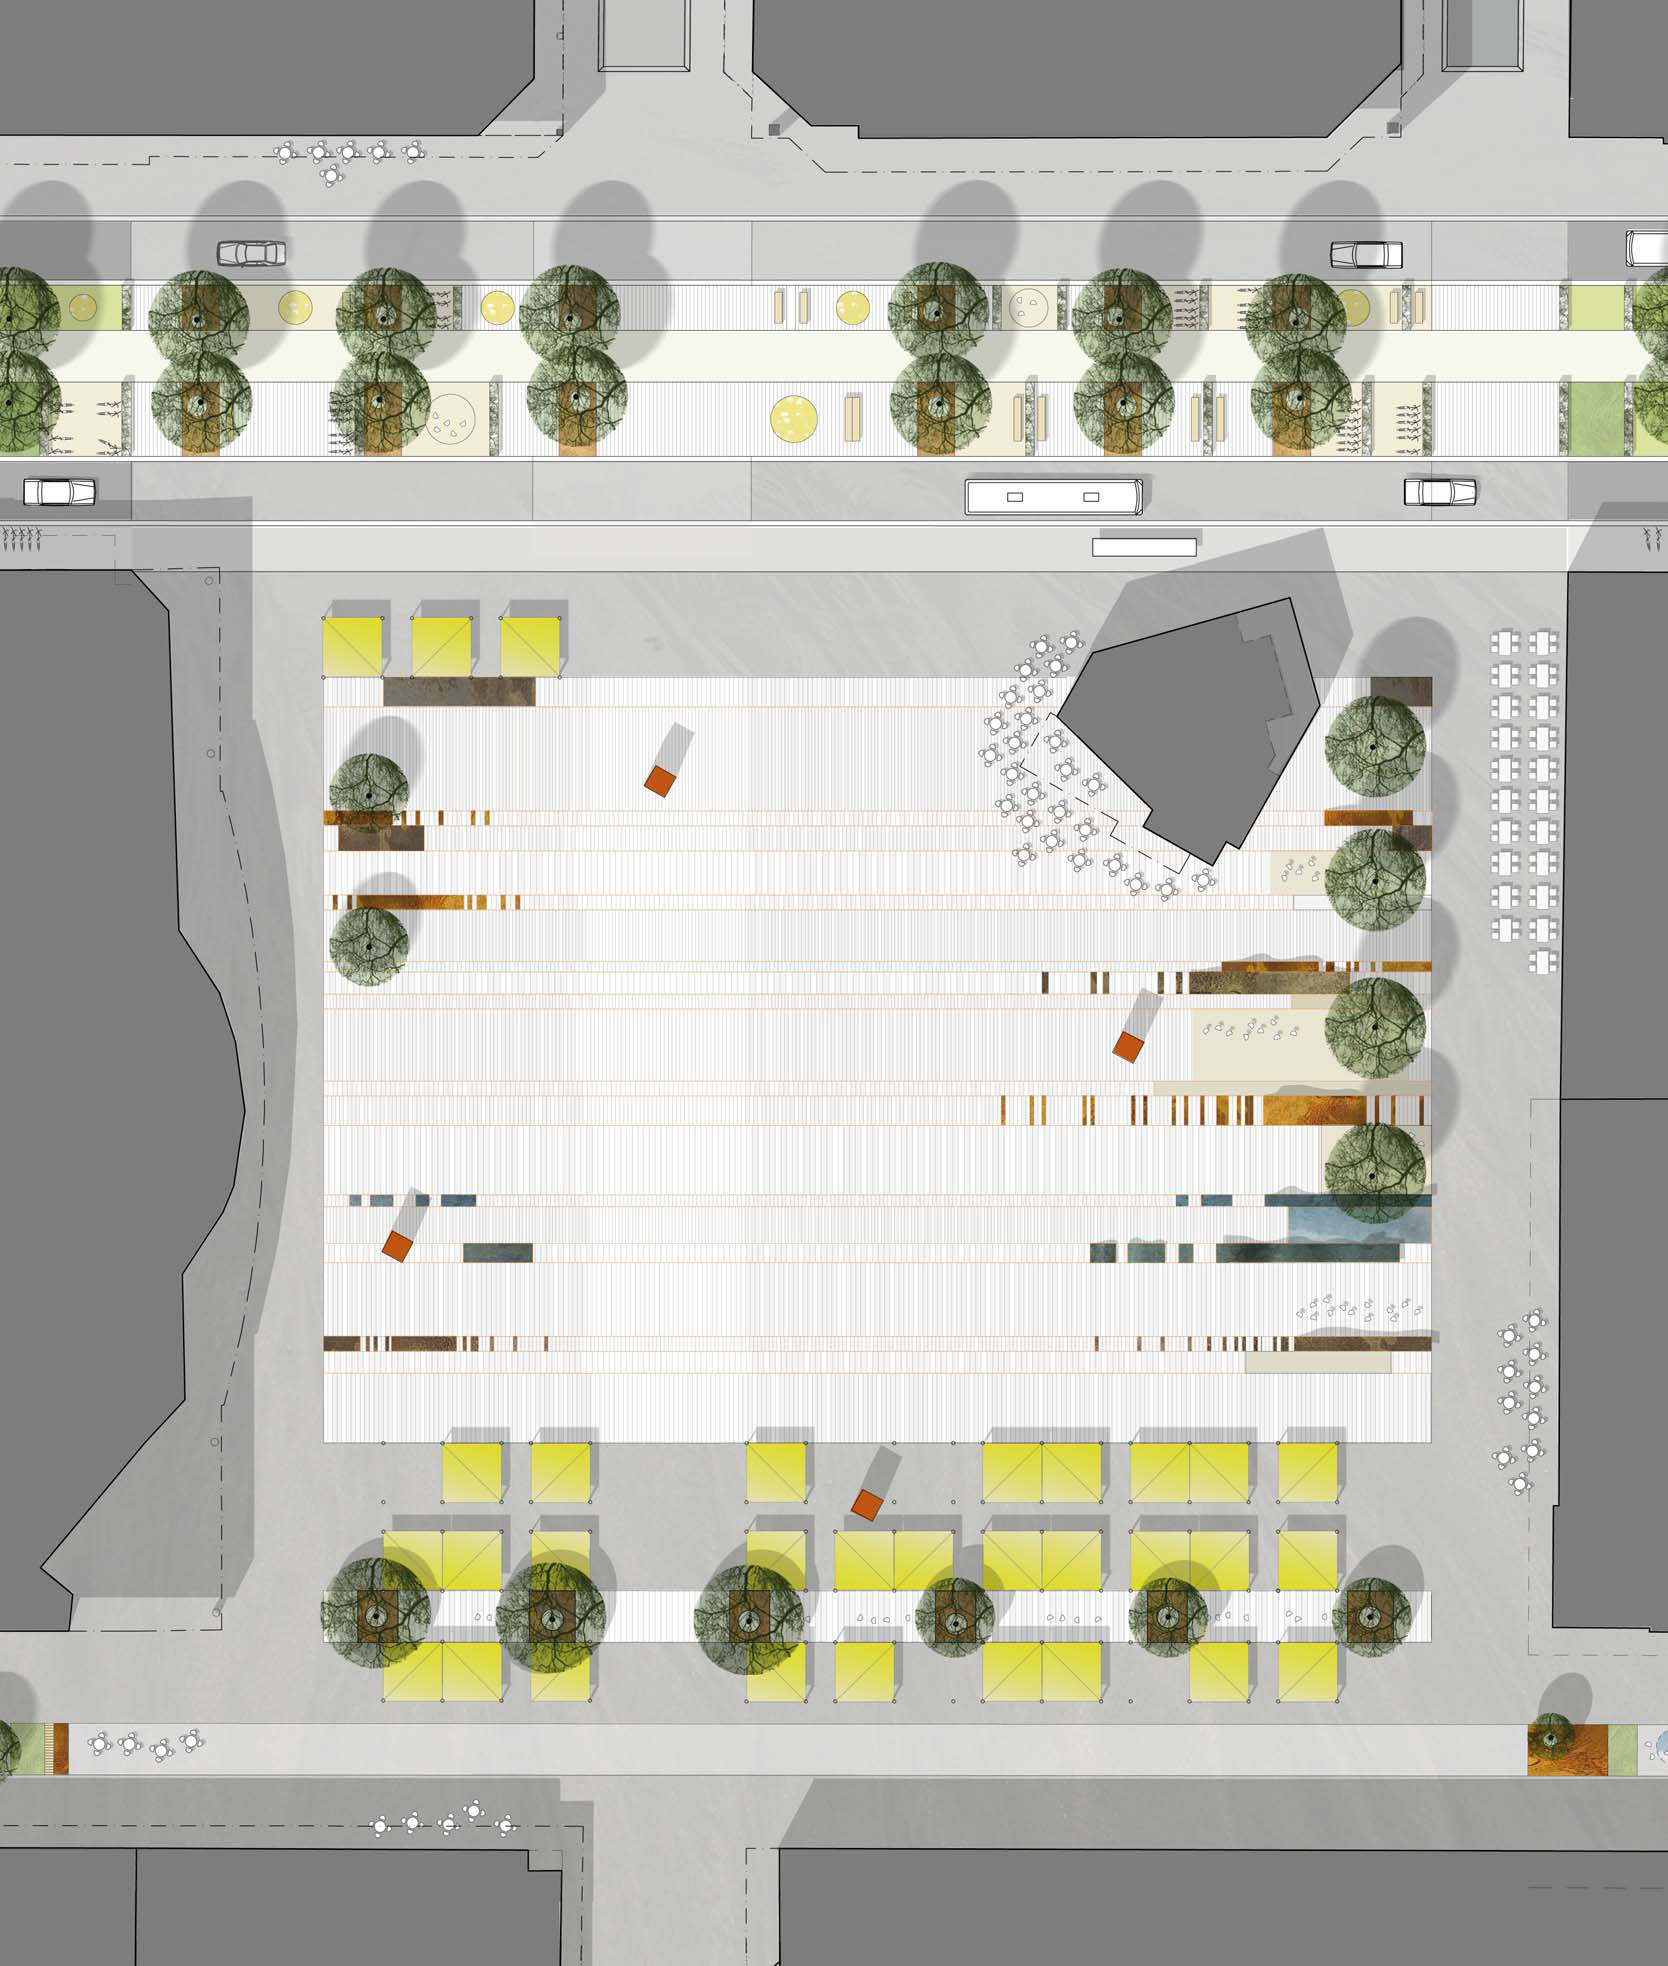 En yta avsedd för torghandel där kvadratiska utrymmen utgör marknadsplatserna, dessa är täckta med ett gult tak.